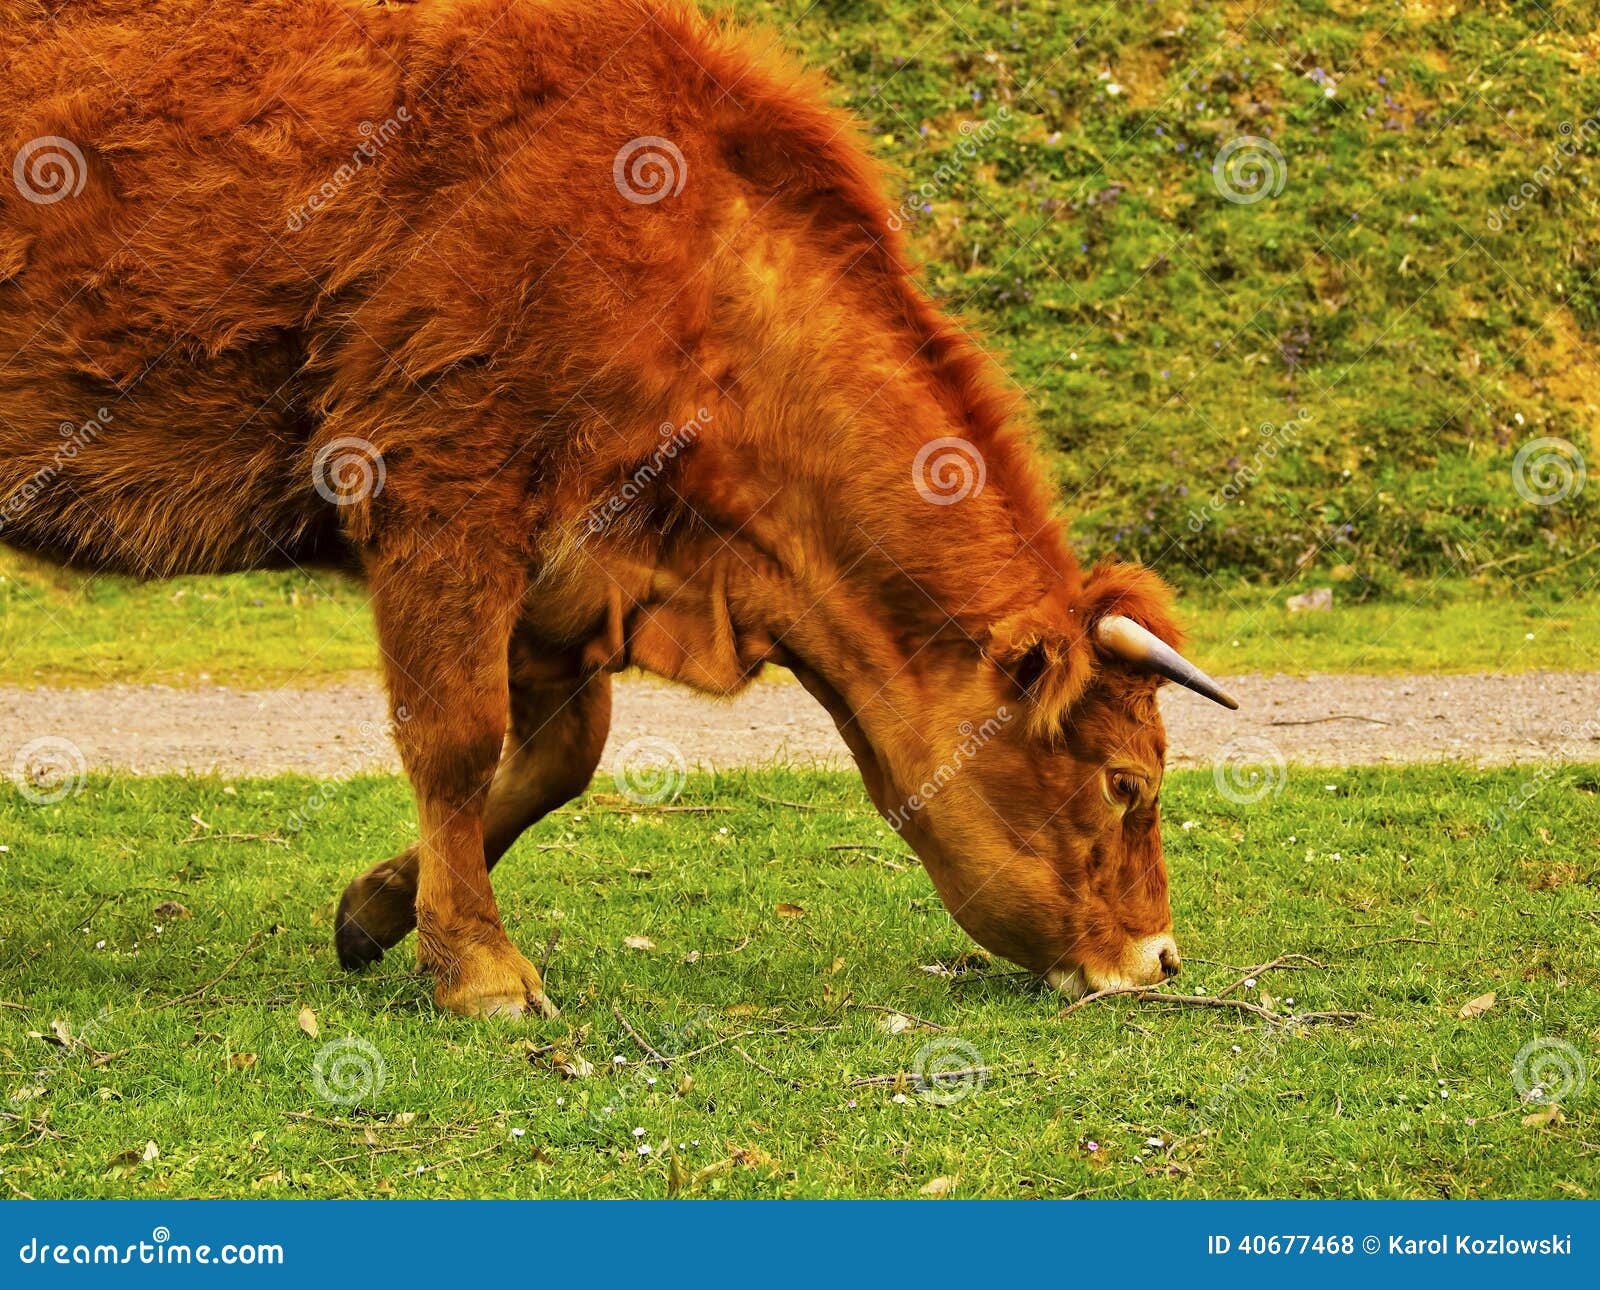 brown cow in la arboleda near bilbao